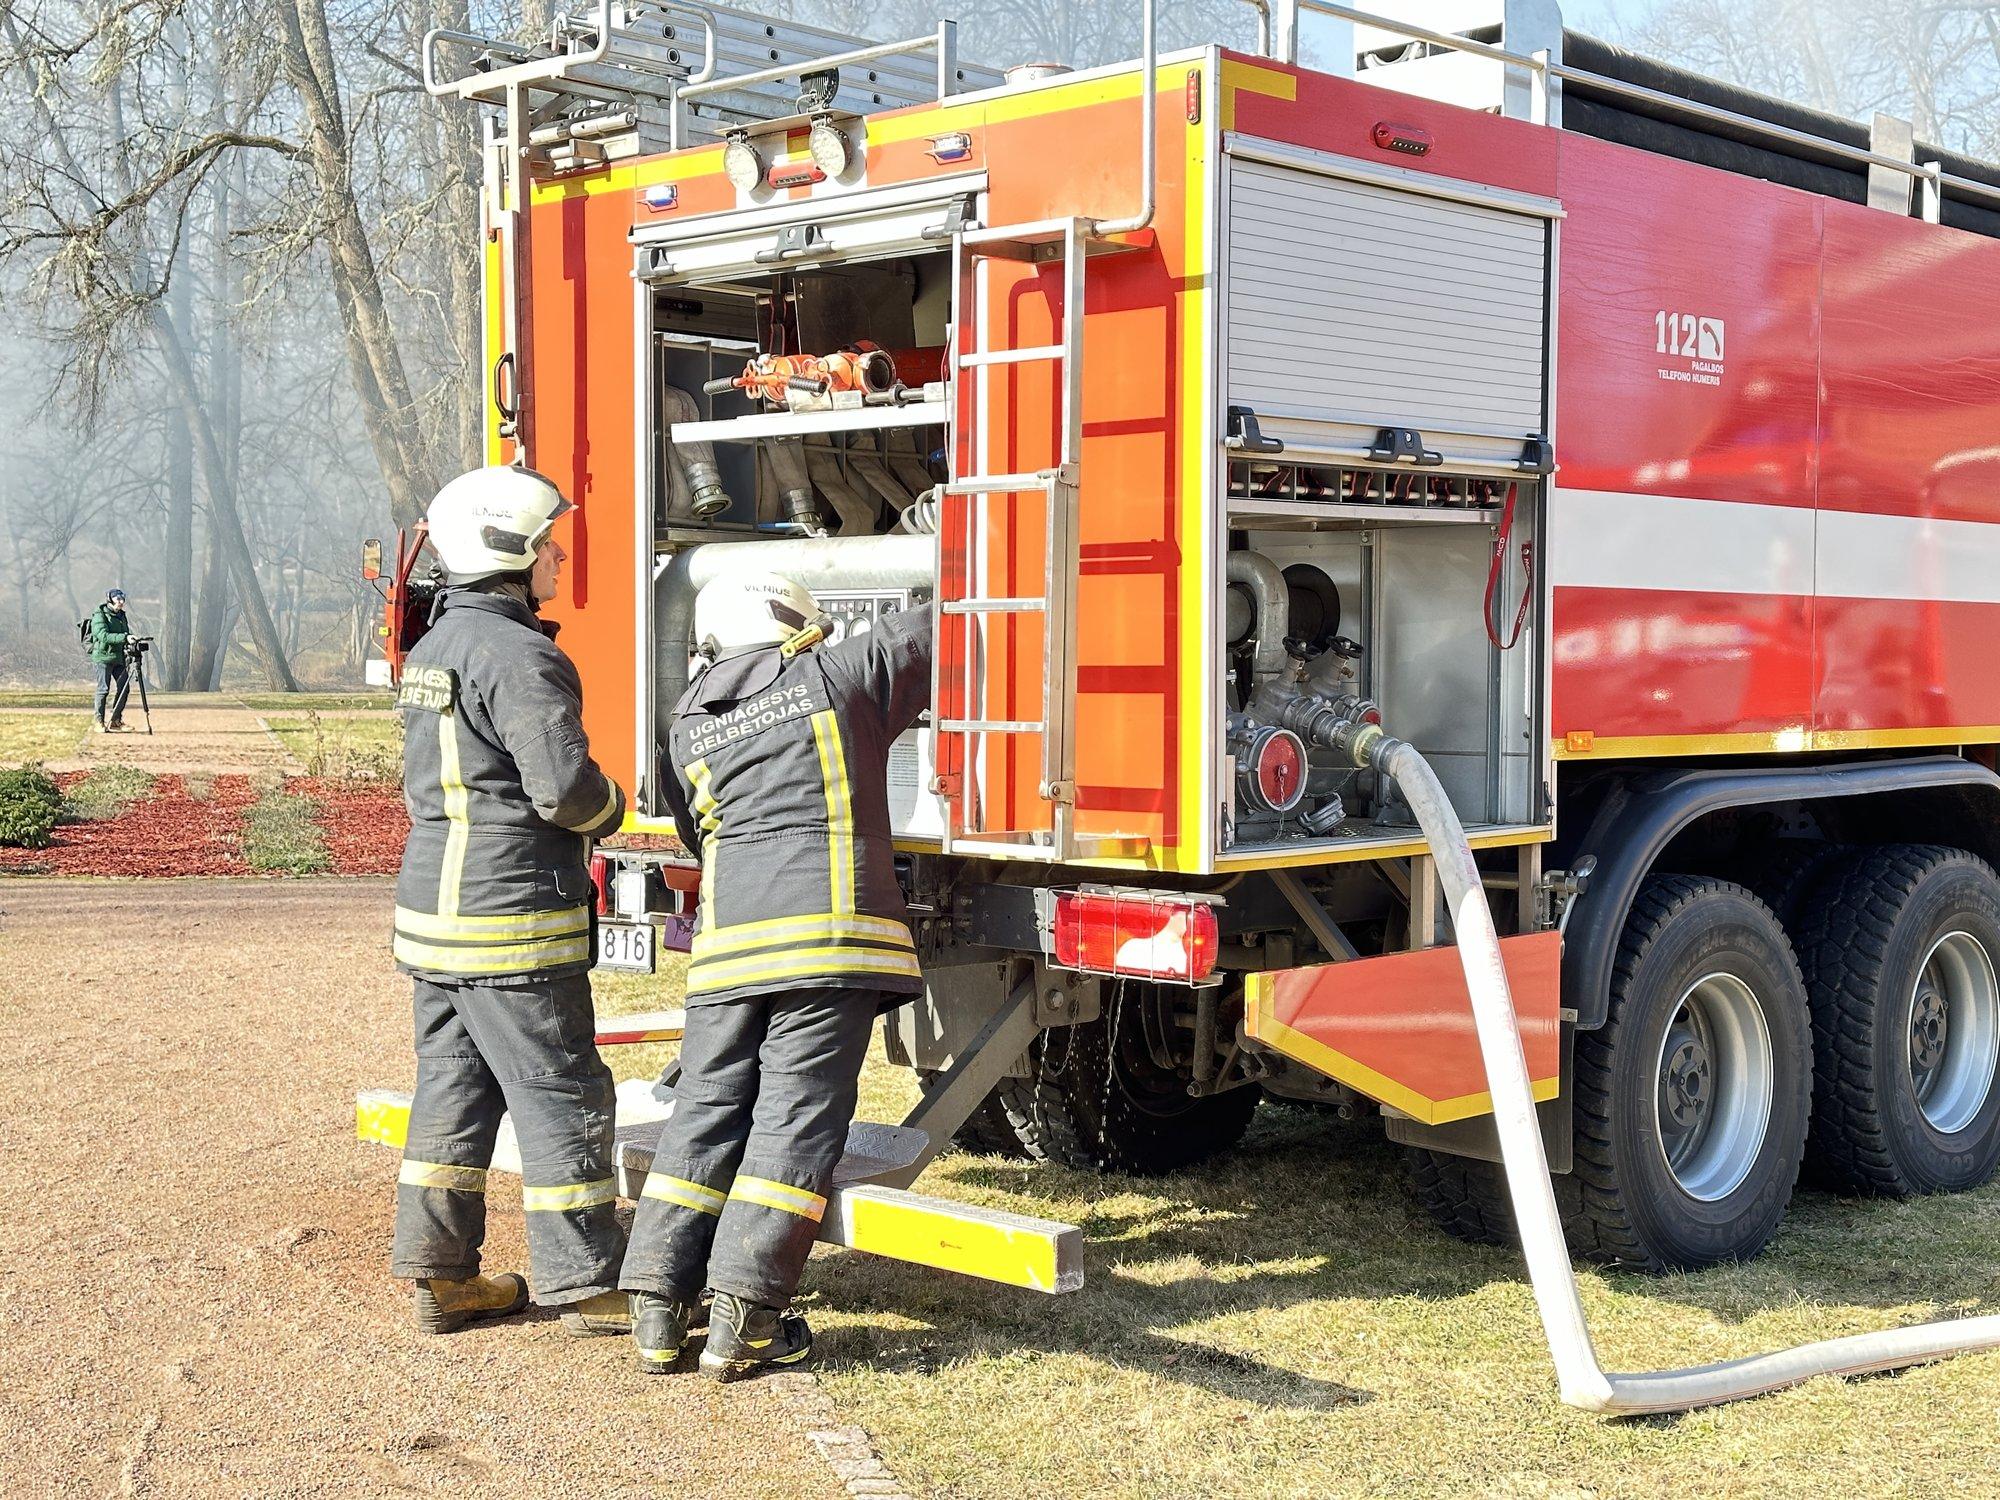 Ignalinos rajone iš degančio namo ugniagesiai išvedė žmogų